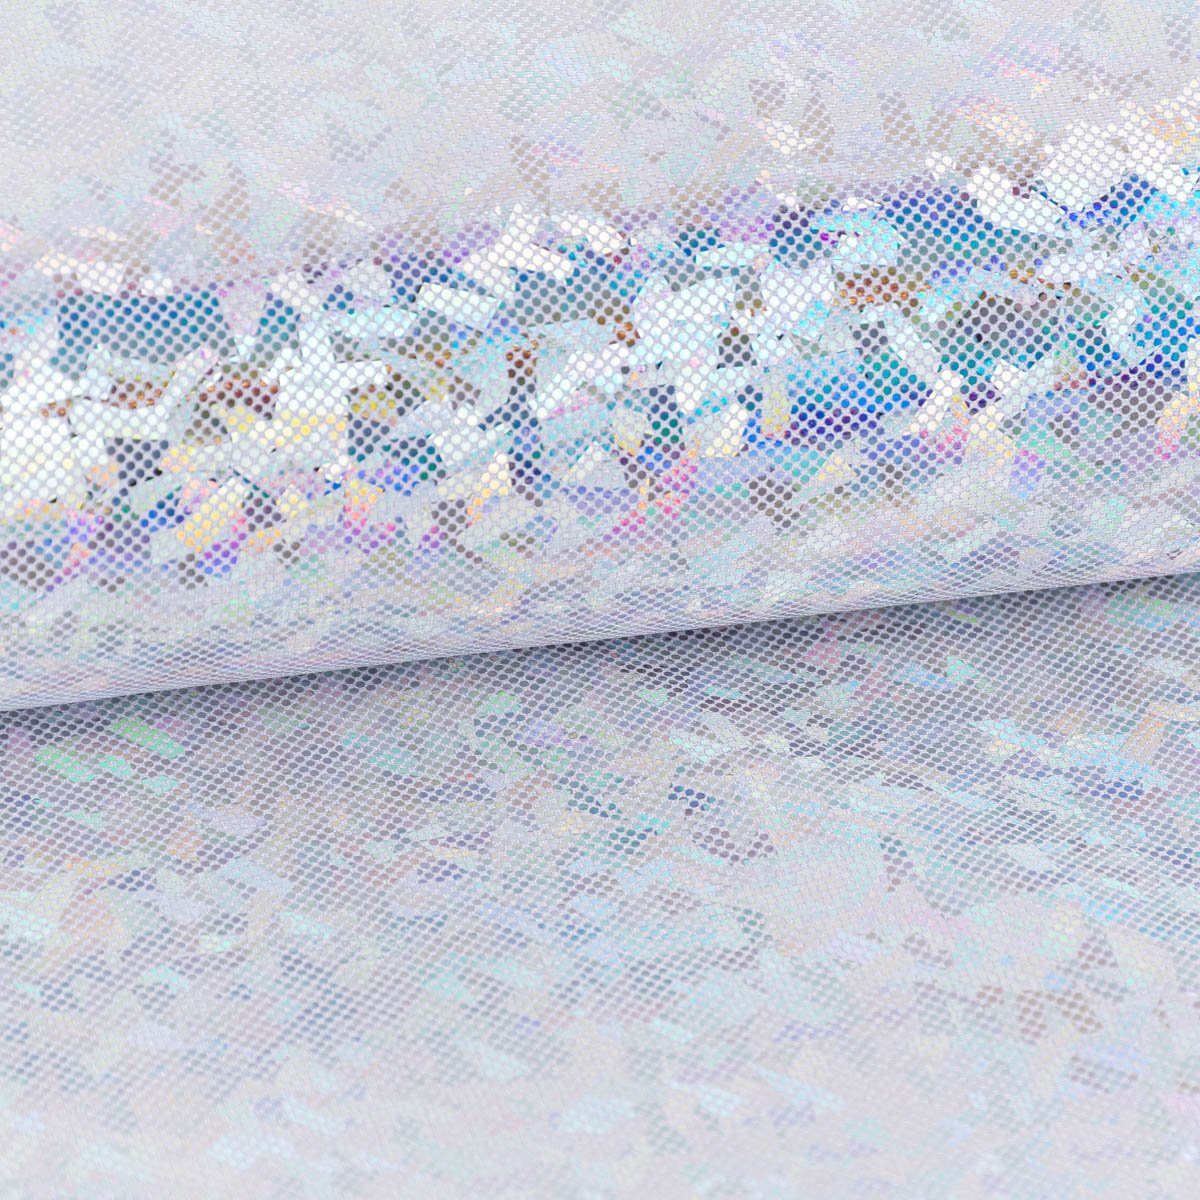 SCHÖNER LEBEN. Stoff Jerseystoff Stretch Glitzer holografisch uni silberfarbig 1,5m Breite, mit Metallic-Effekt